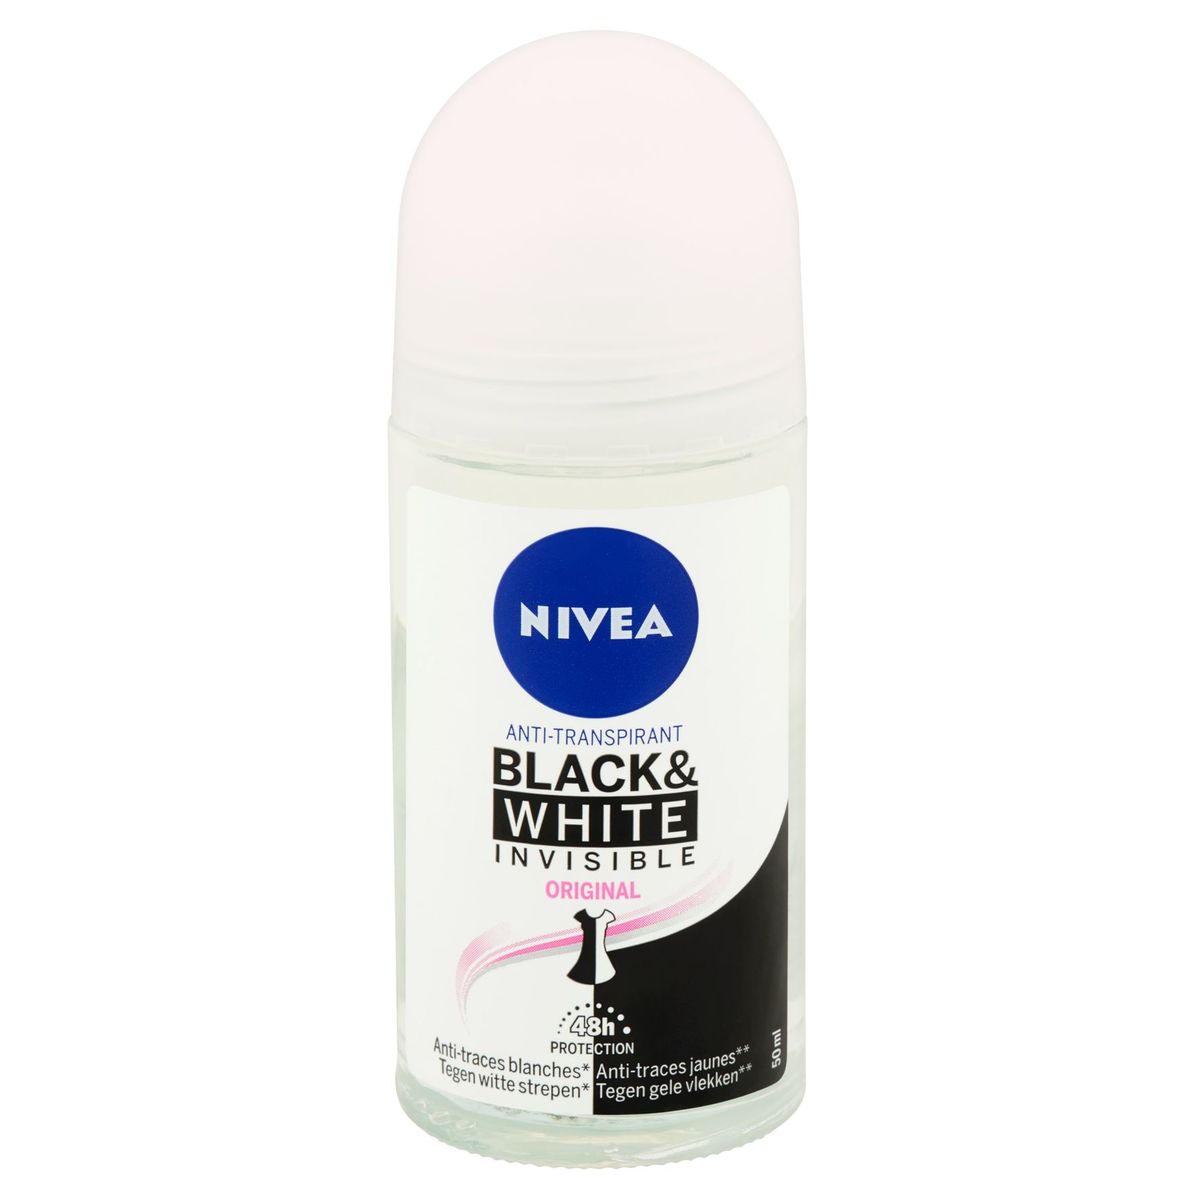 Nivea Anti-Transpirant Black & White Invisible Original 48h Protection 50 ml